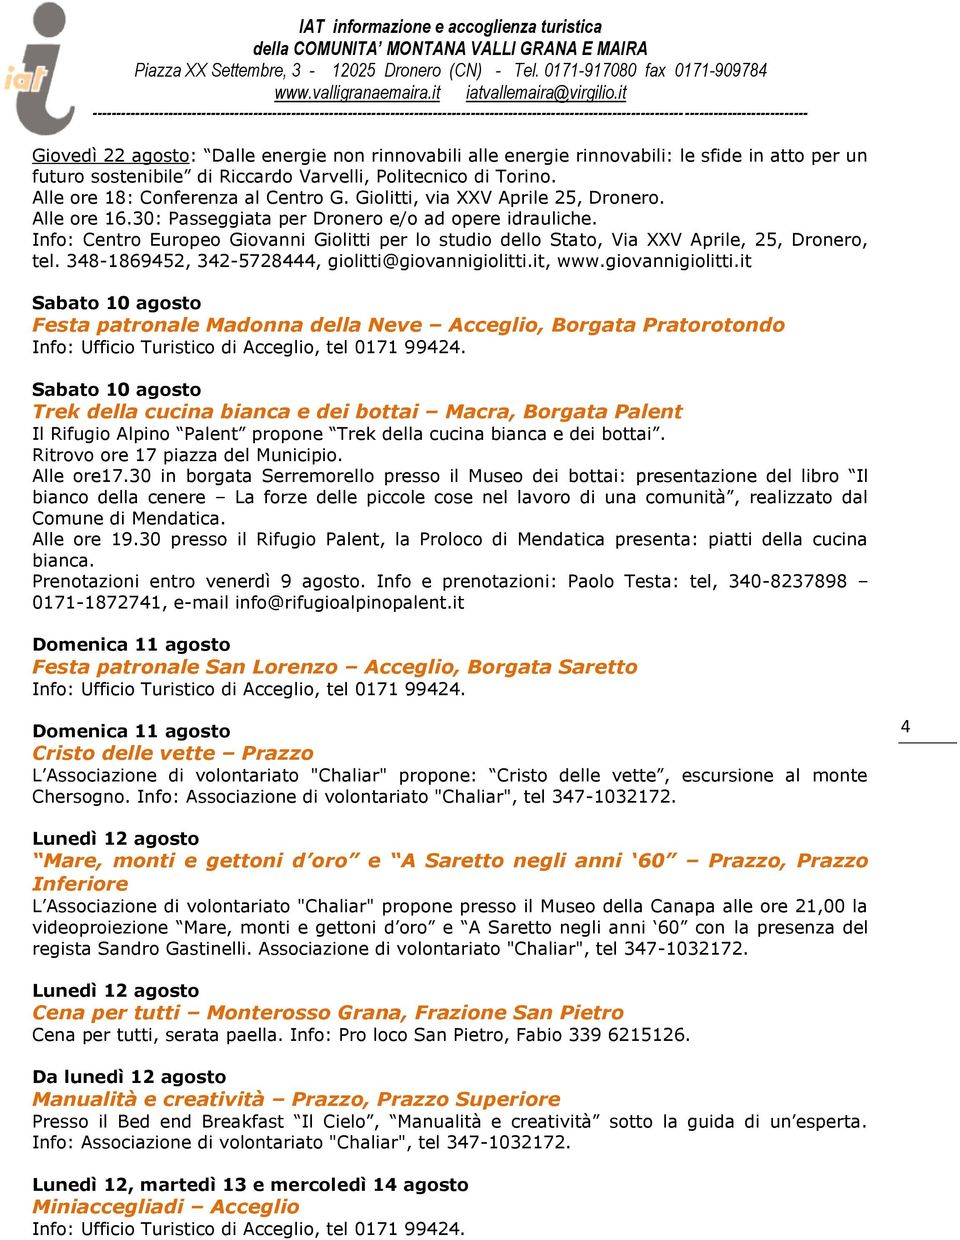 Info: Centro Europeo Giovanni Giolitti per lo studio dello Stato, Via XXV Aprile, 25, Dronero, tel. 348-1869452, 342-5728444, giolitti@giovannigiolitti.